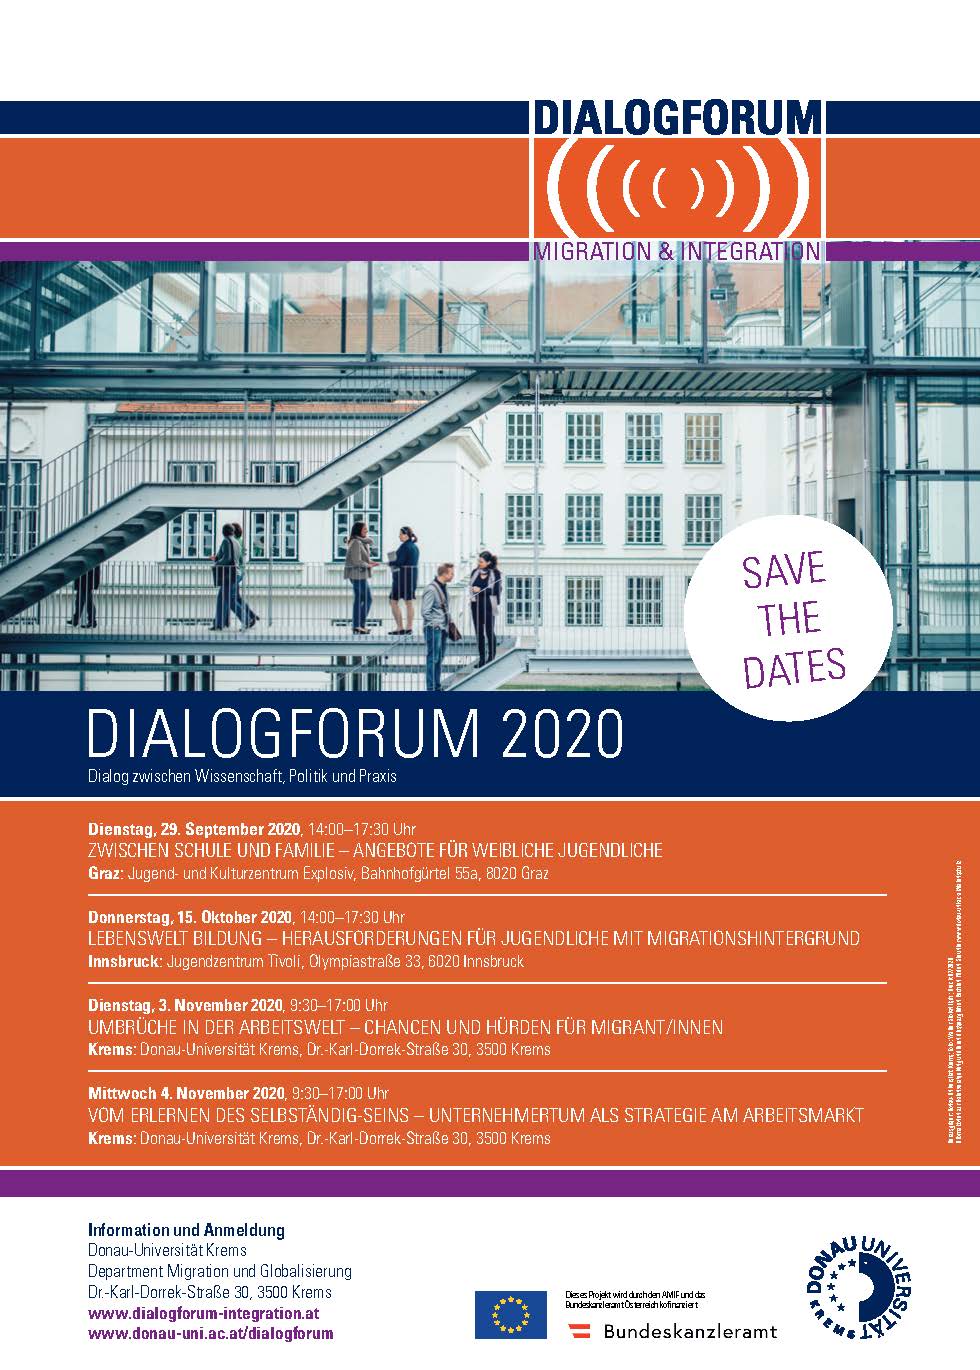 DialogForum 2020